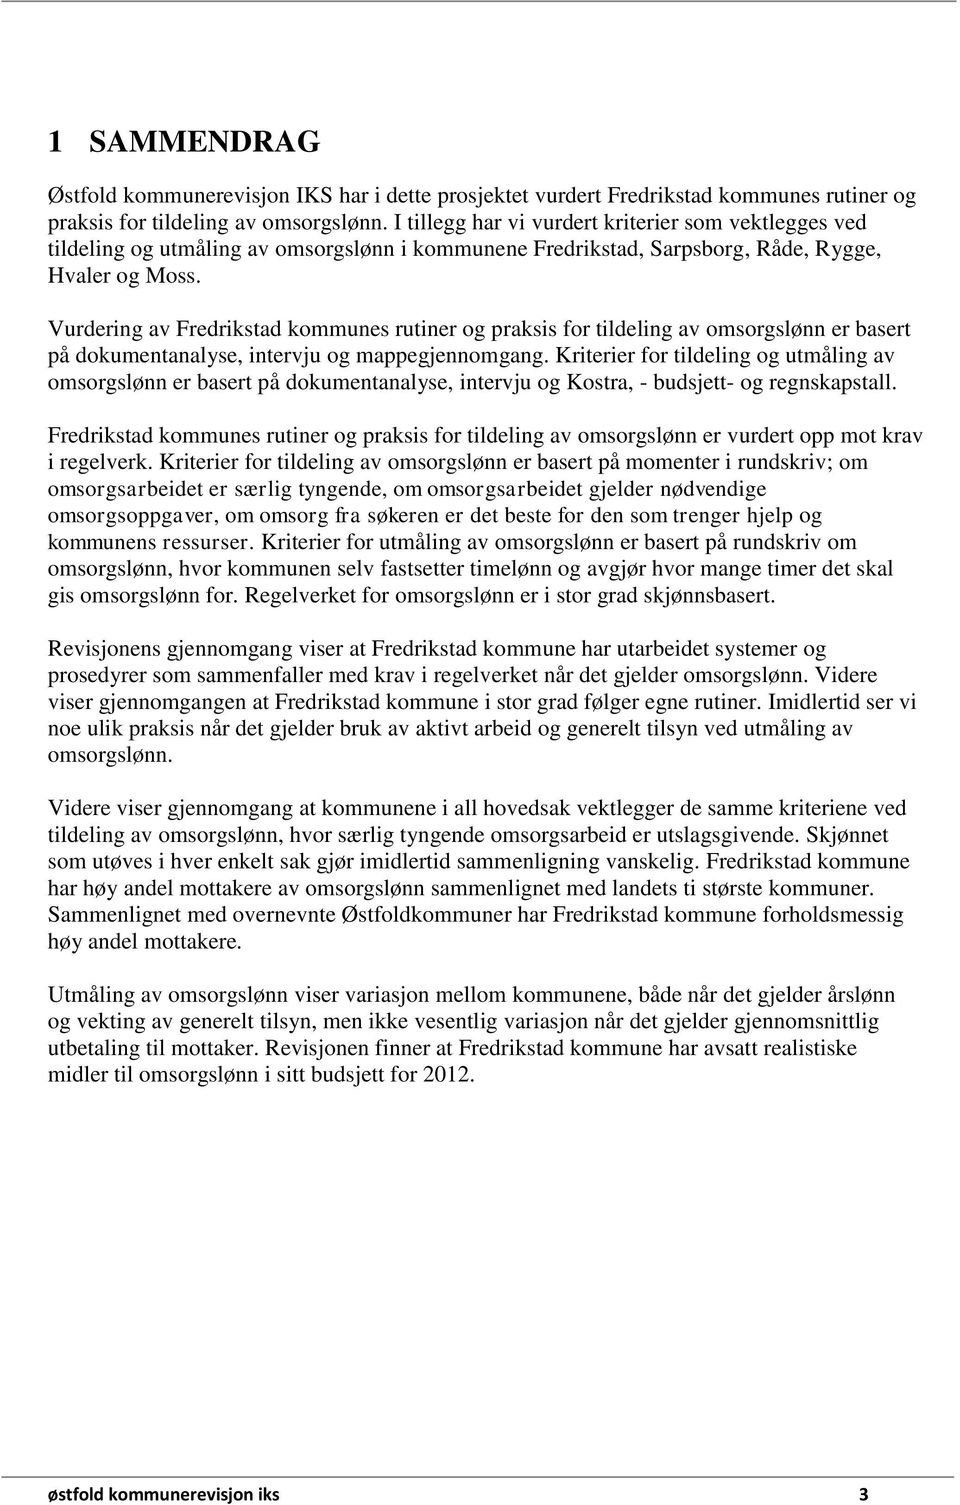 Vurdering av Fredrikstad kommunes rutiner og praksis for tildeling av omsorgslønn er basert på dokumentanalyse, intervju og mappegjennomgang.